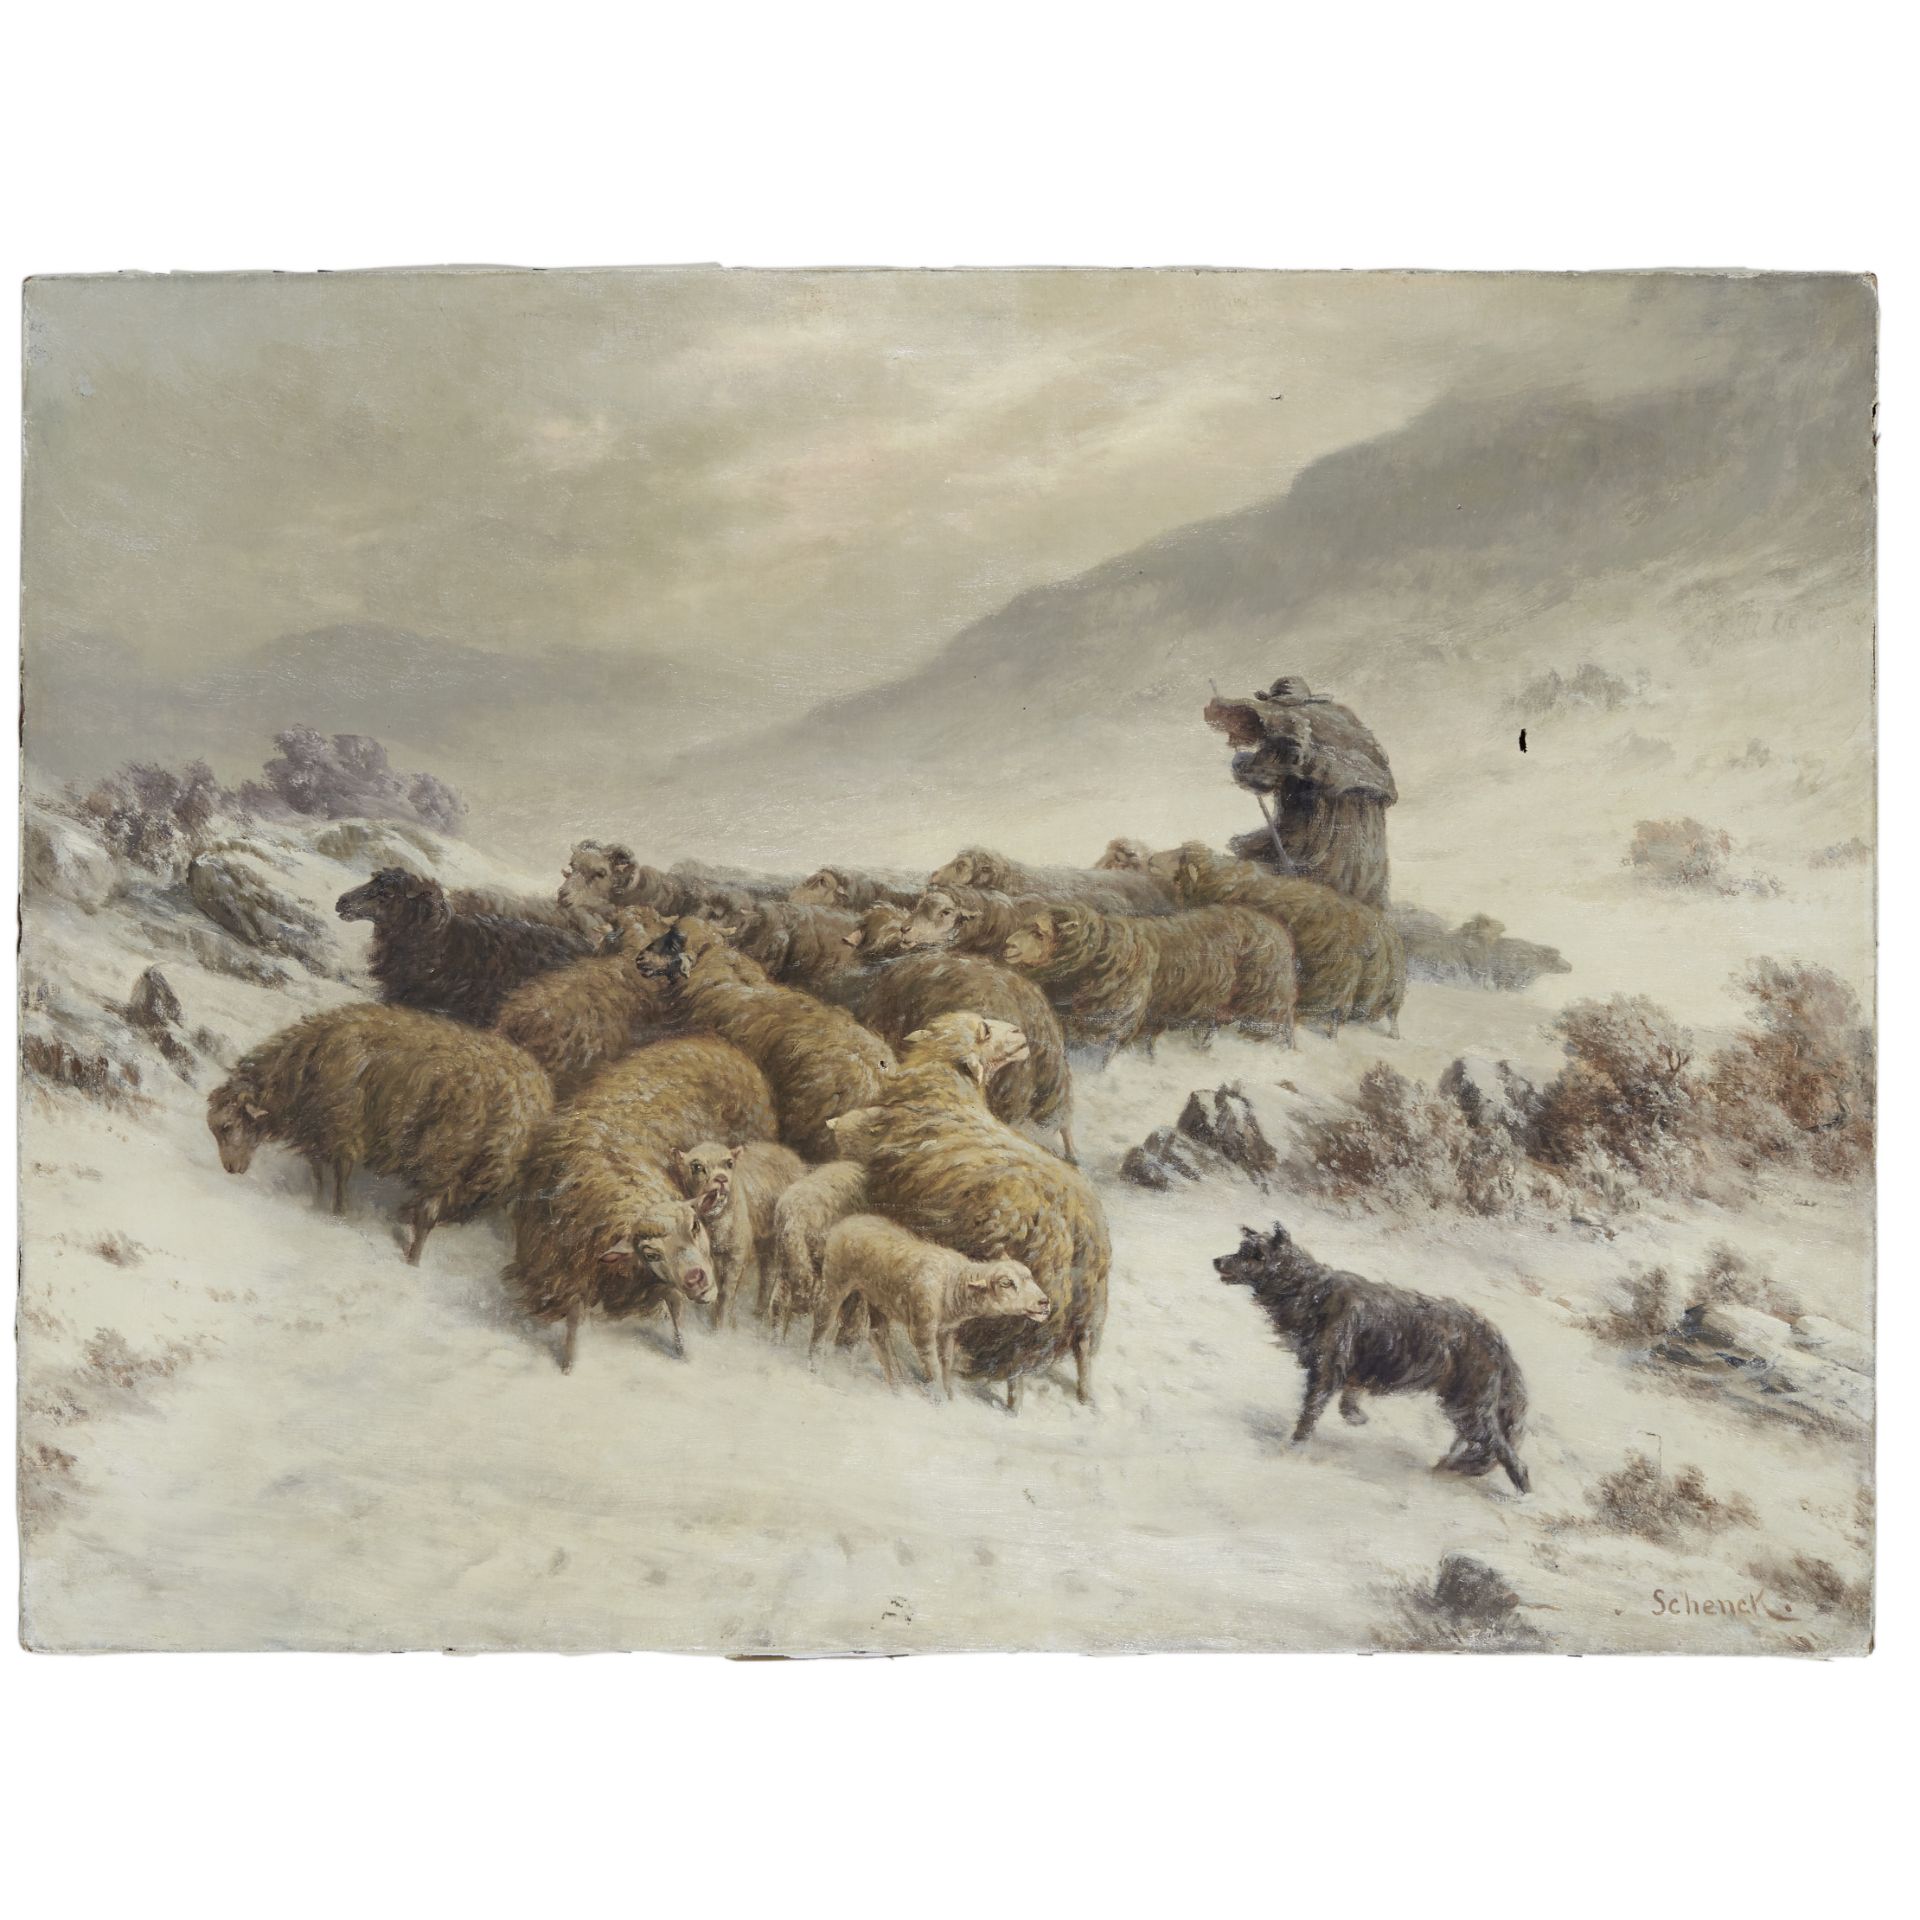 August Friedrich Albrecht Schenck (Danish, 1828-1901) Guarding the flock